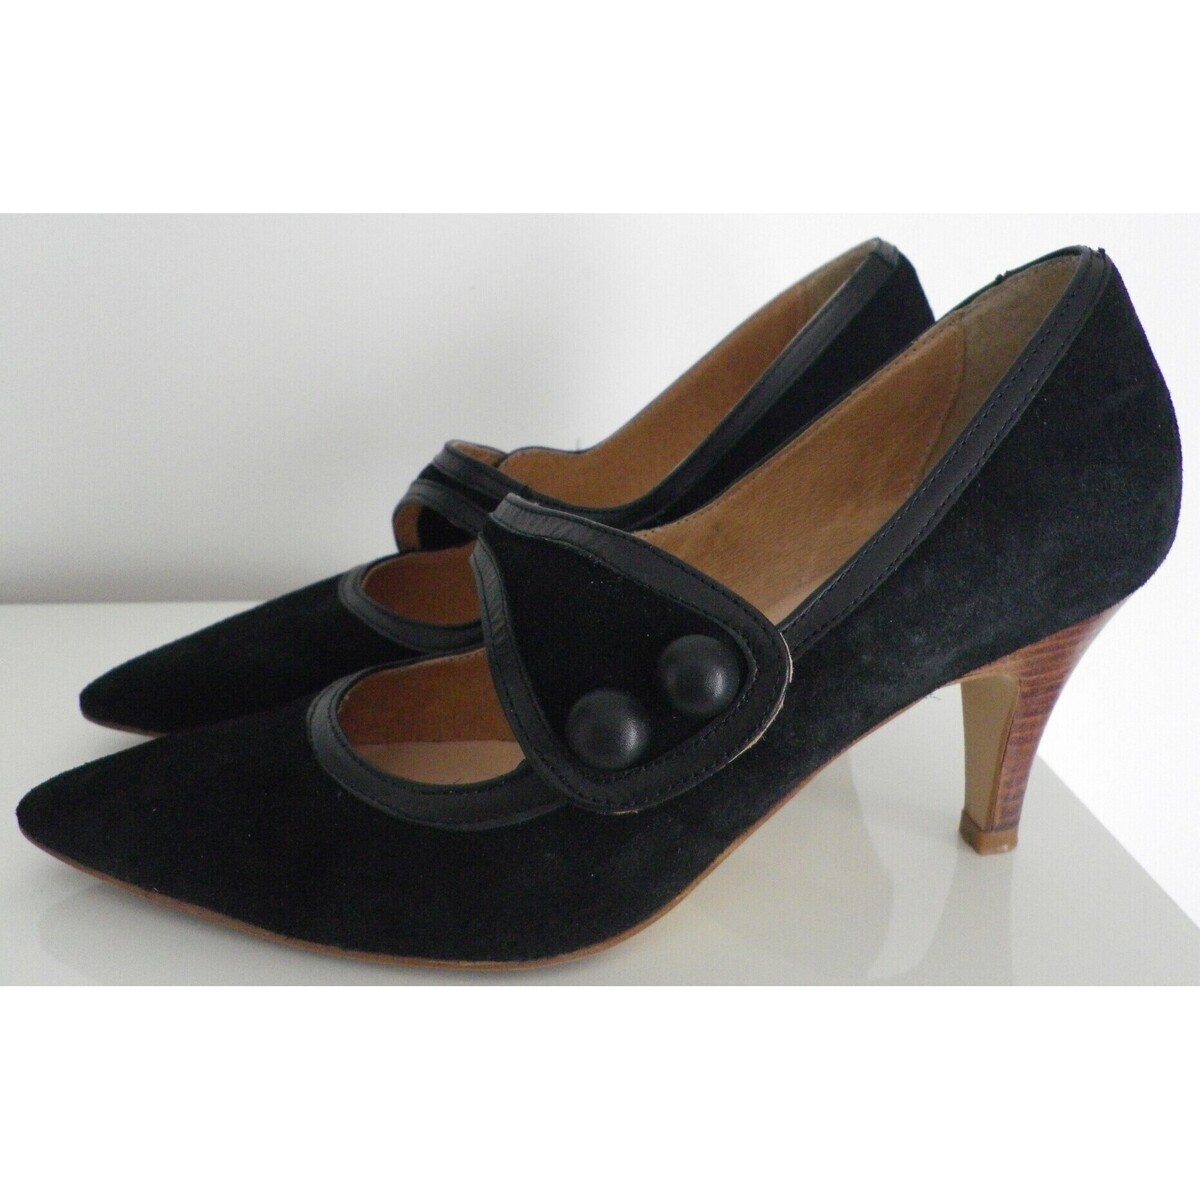 Chaussures Femme Voir toutes les ventes privées Escarpins noirs talons 8 cm T.39 tout cuir SAN MARINA, en parfai Noir